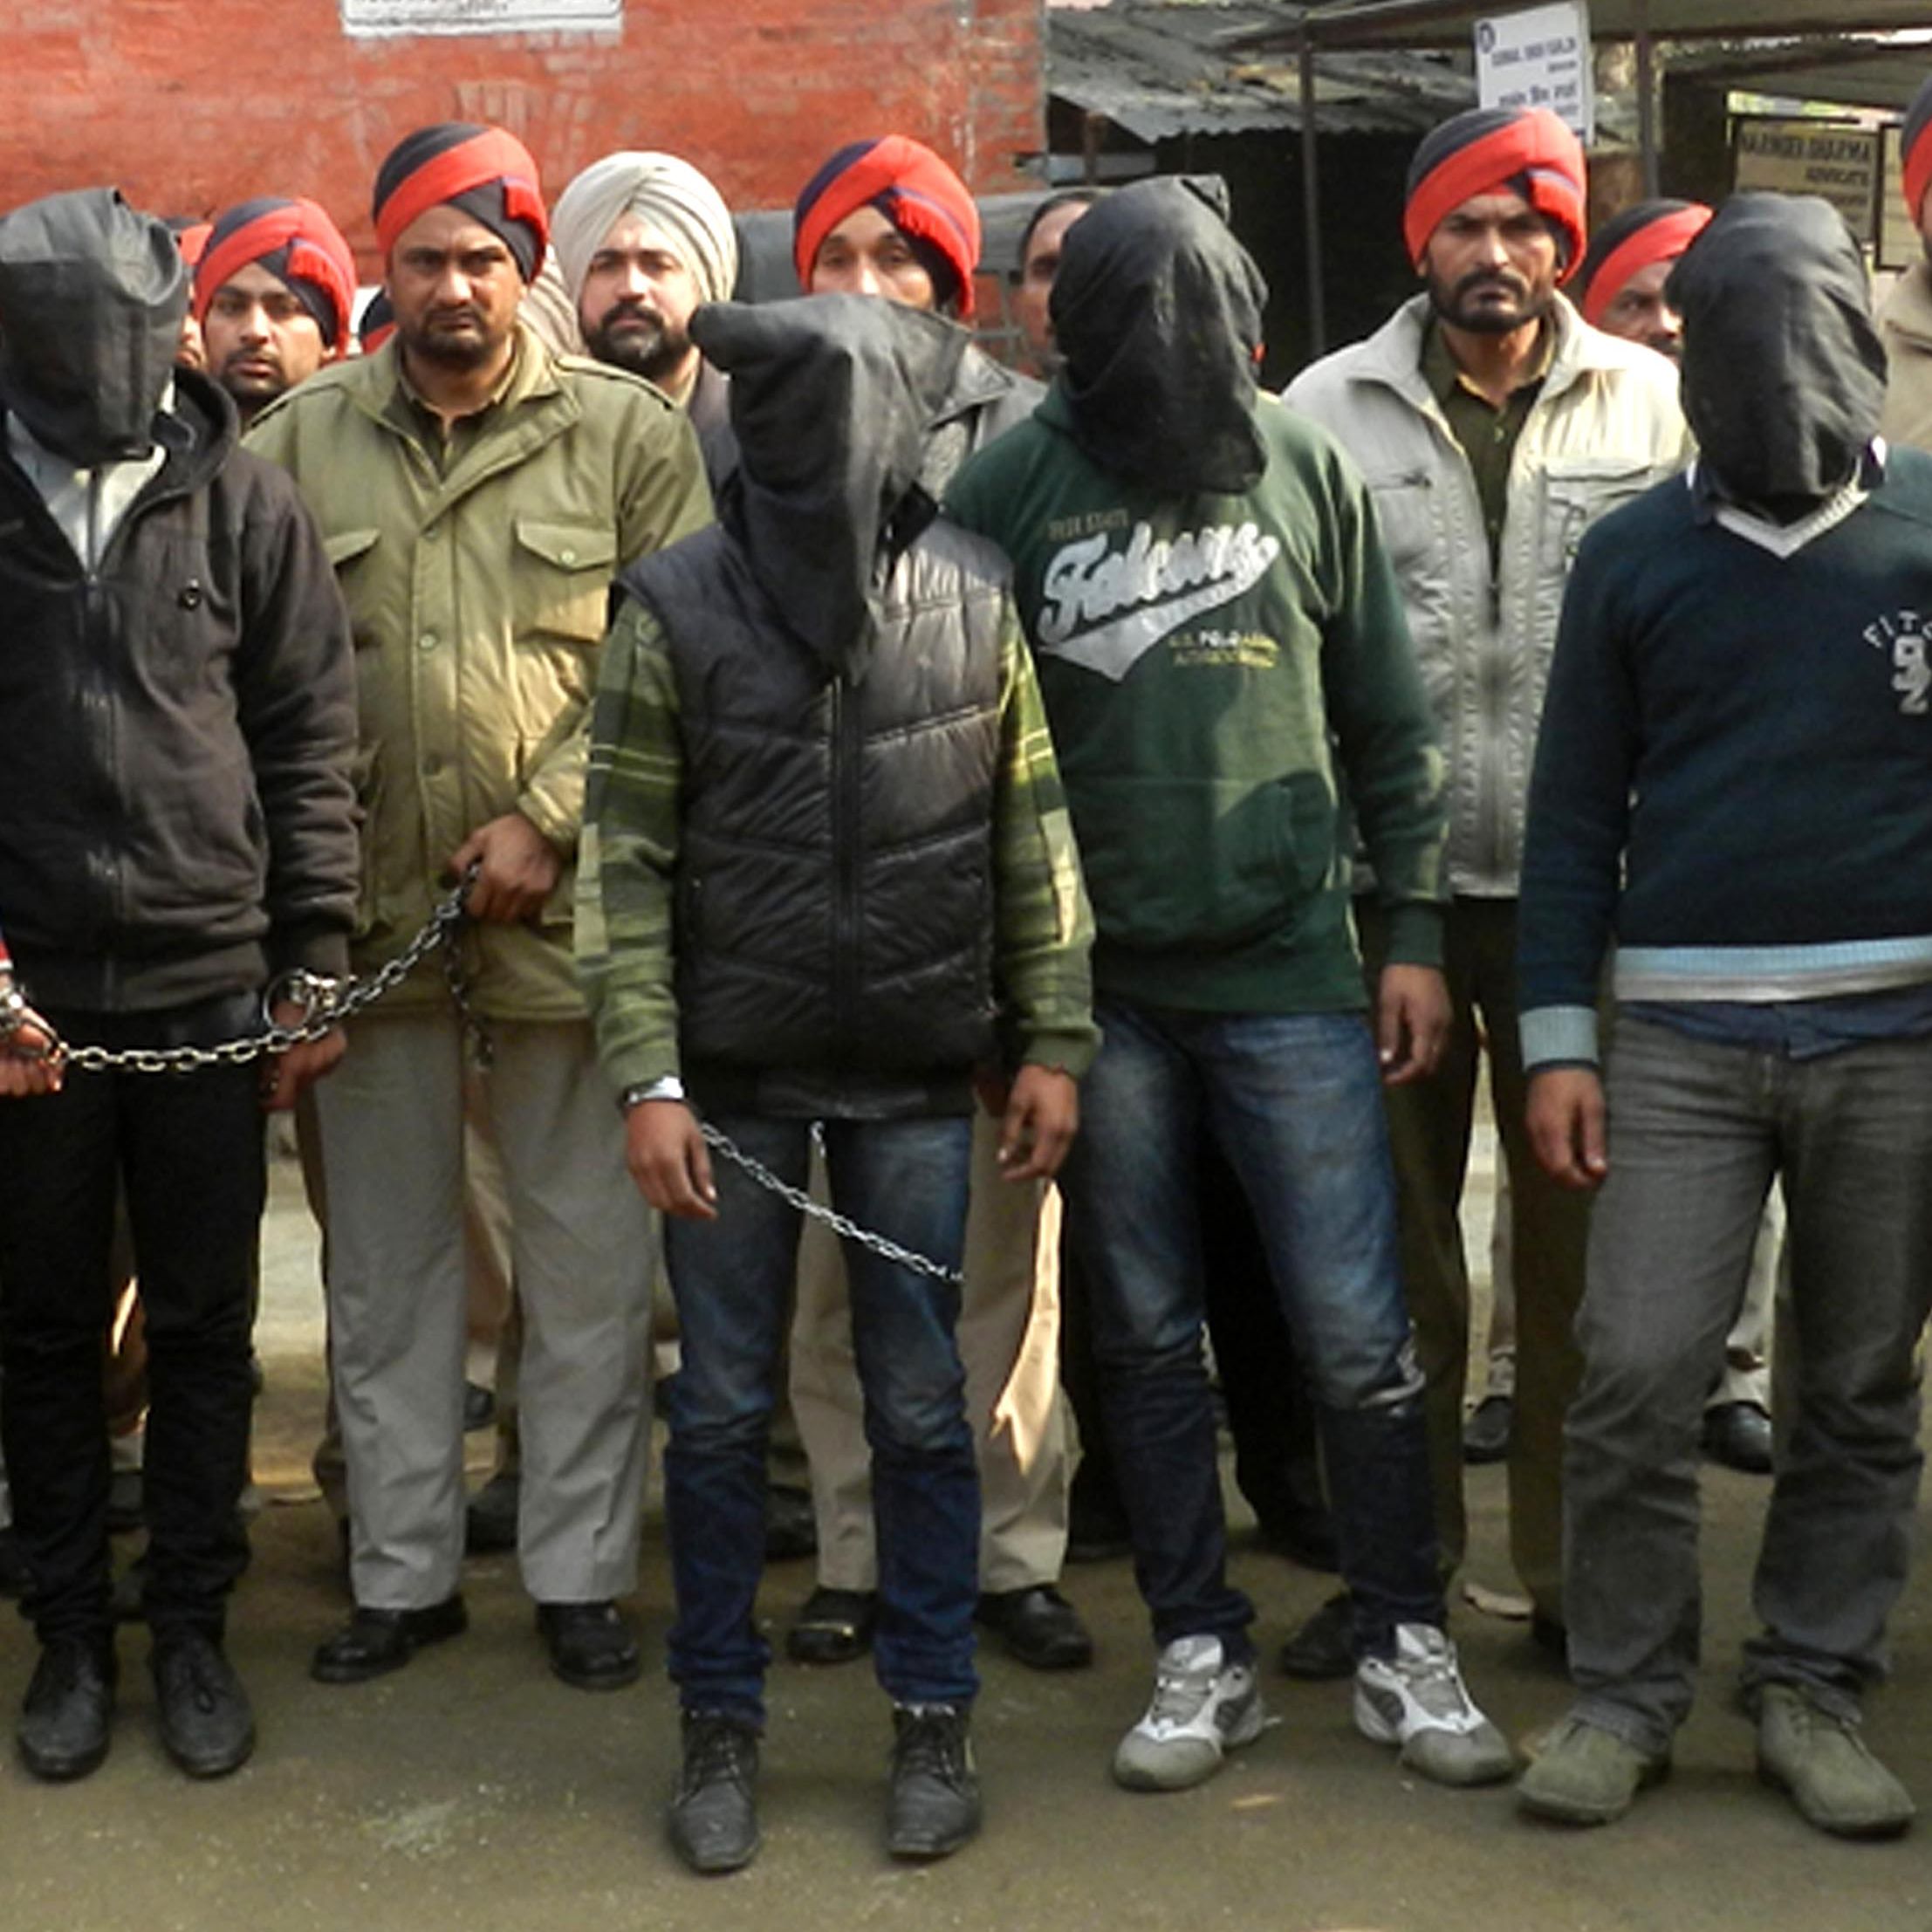 2214px x 2214px - Police: 7 men gang rape bus passenger in India | CNN